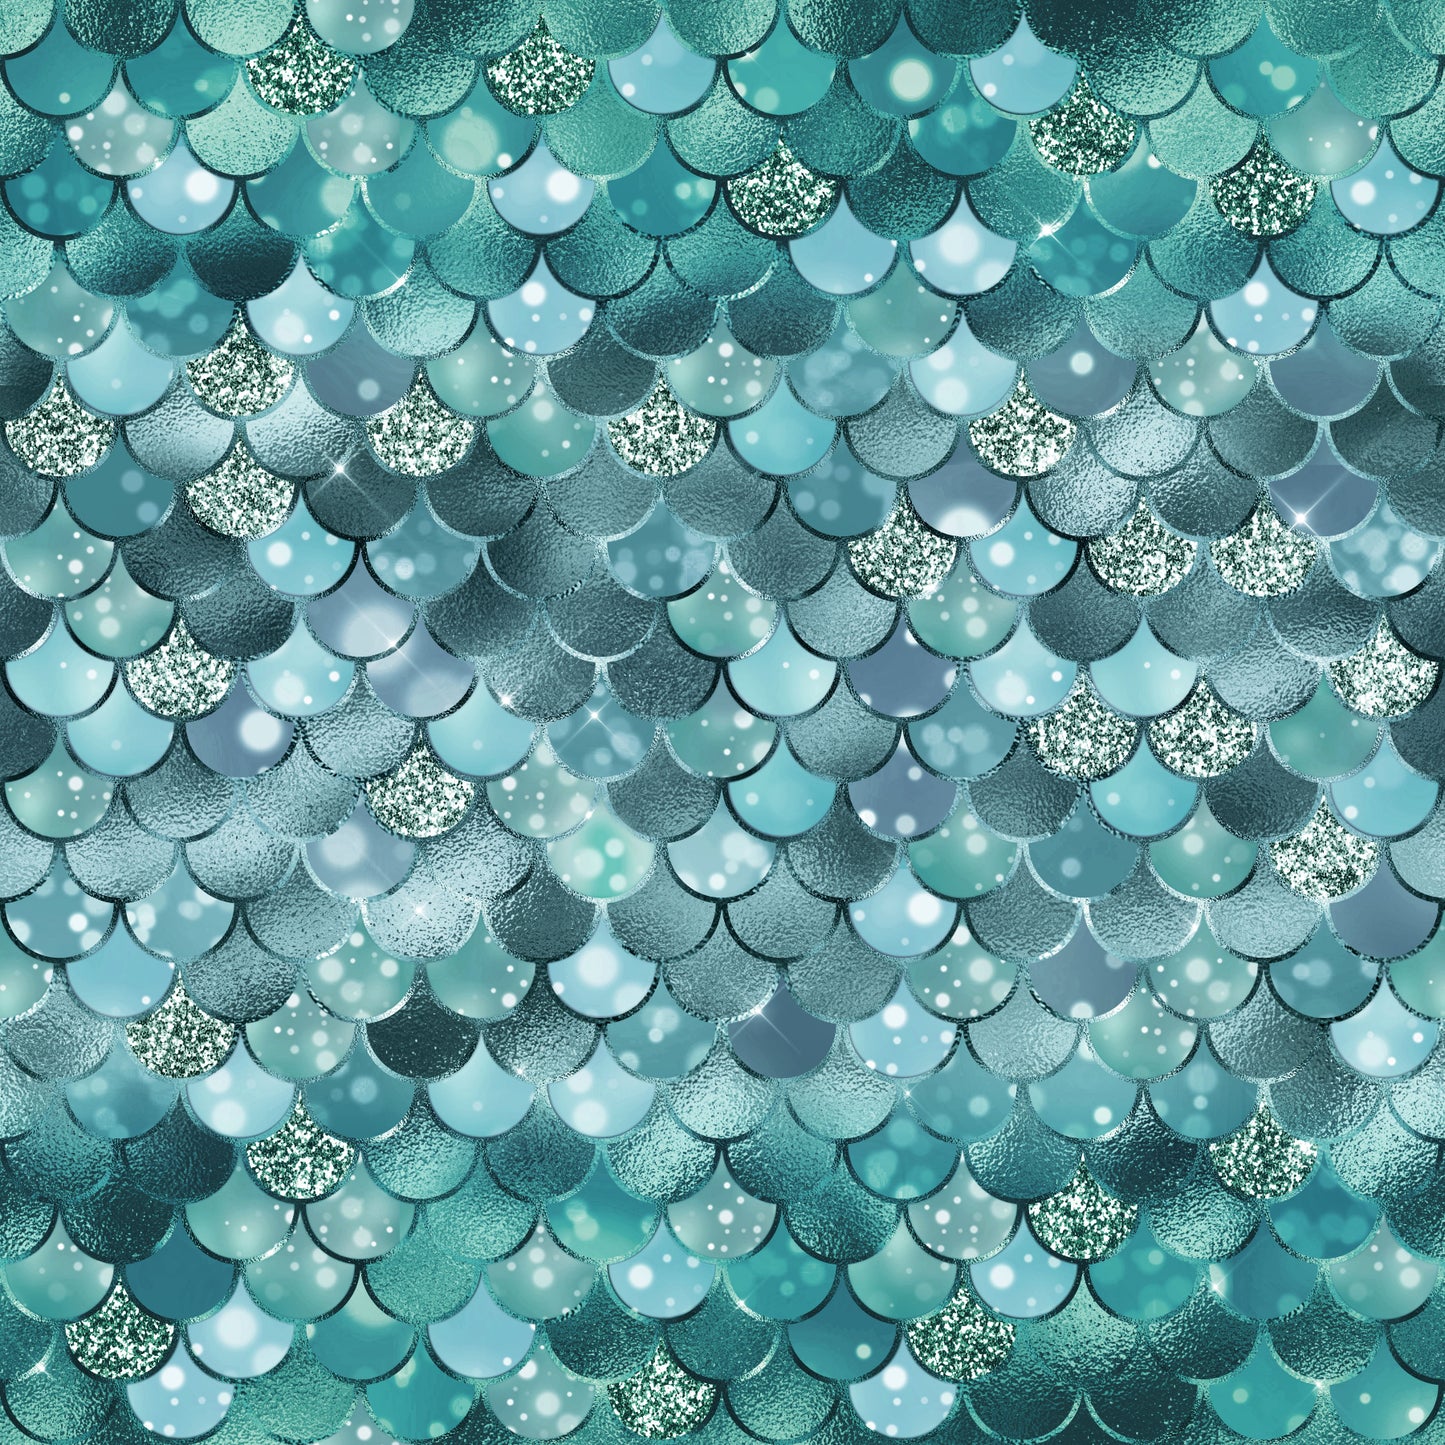 Enchanted Seas / Mermaids - Aqua by Northcott Fabrics - 778148281383